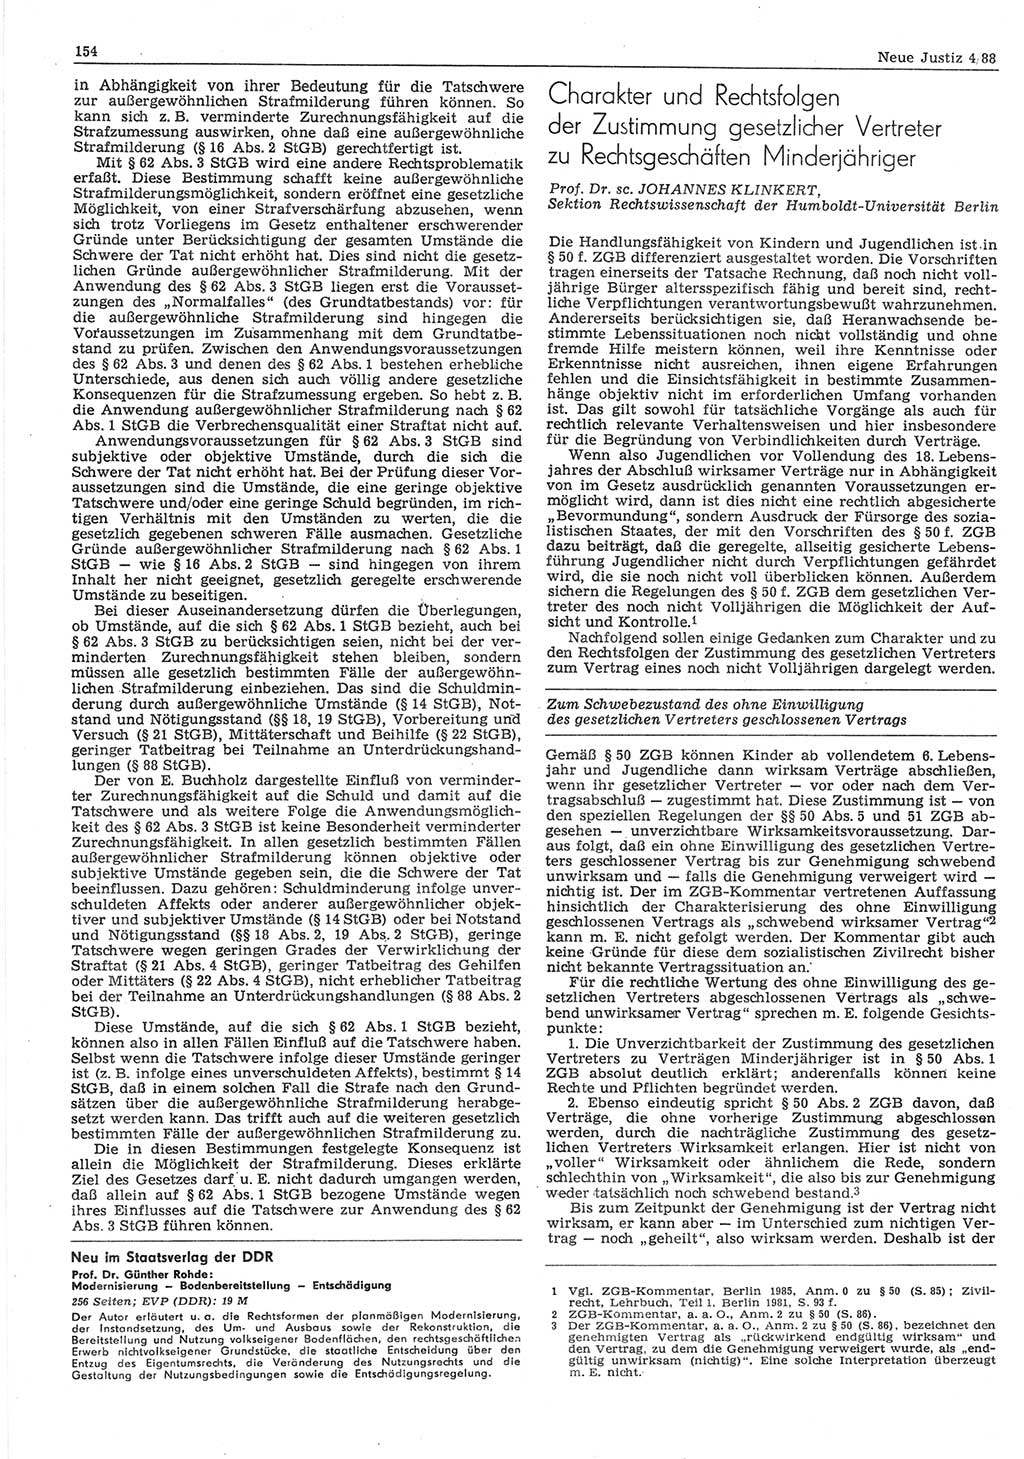 Neue Justiz (NJ), Zeitschrift für sozialistisches Recht und Gesetzlichkeit [Deutsche Demokratische Republik (DDR)], 42. Jahrgang 1988, Seite 154 (NJ DDR 1988, S. 154)